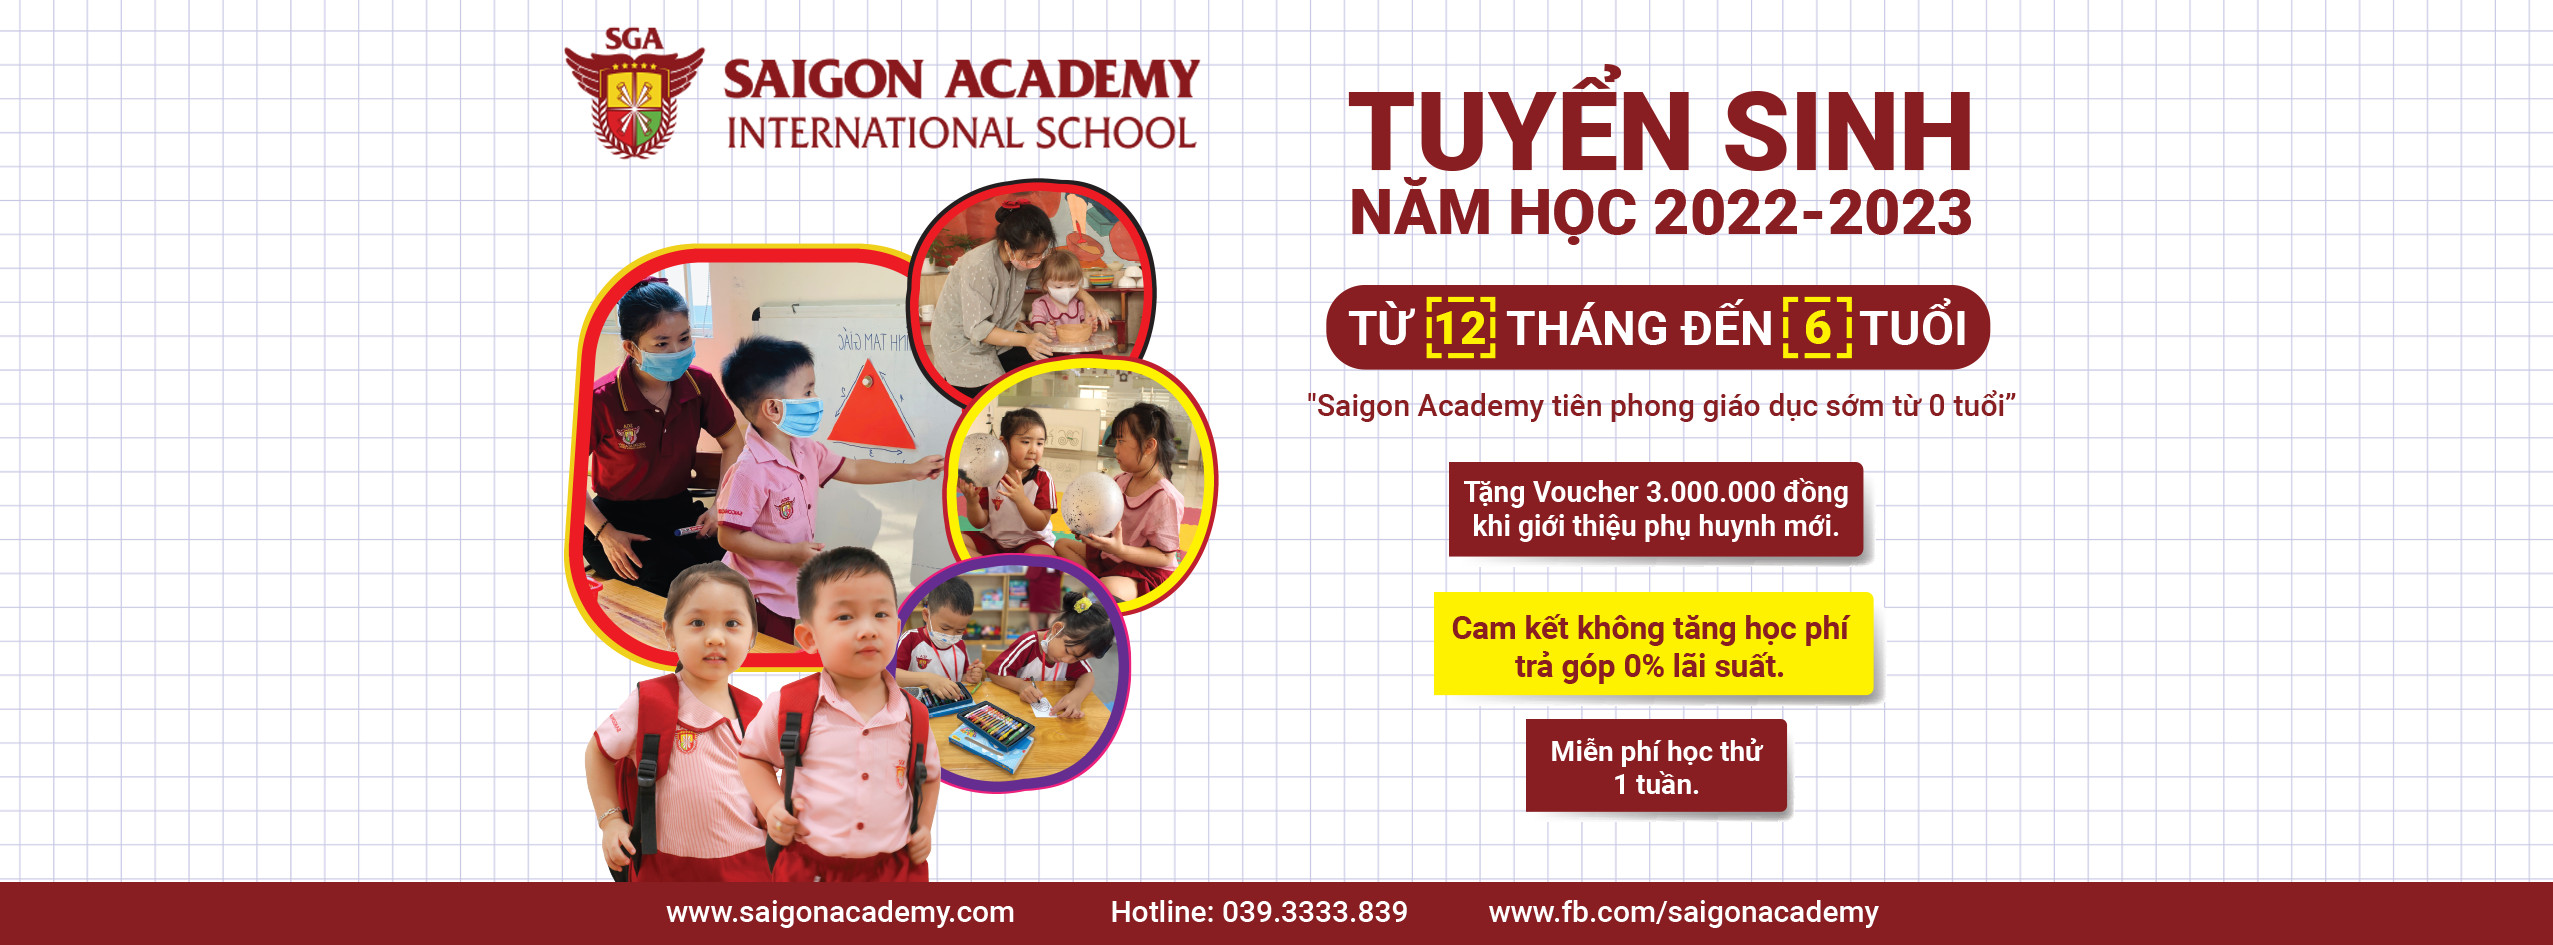 Kính thưa Quý Phụ huynh, năm học 2021 – 2022 sắp kết thúc để bắt đầu cho một năm học mới 2022 – 2023 với những dự án học tập trải nghiệm thú vị, phong phú và đa dạng ở phía trước đang chờ đón các con. Nhằm tri ân Quý Phụ huynh và đồng cảm nỗi khó khăn chung trước đại dịch Covid-19 trong năm qua. Hệ Thống Trường Mầm Non Saigon Academy có chính sách học phí ưu đãi đặc biệt cho năm học mới 2022 - 2023.